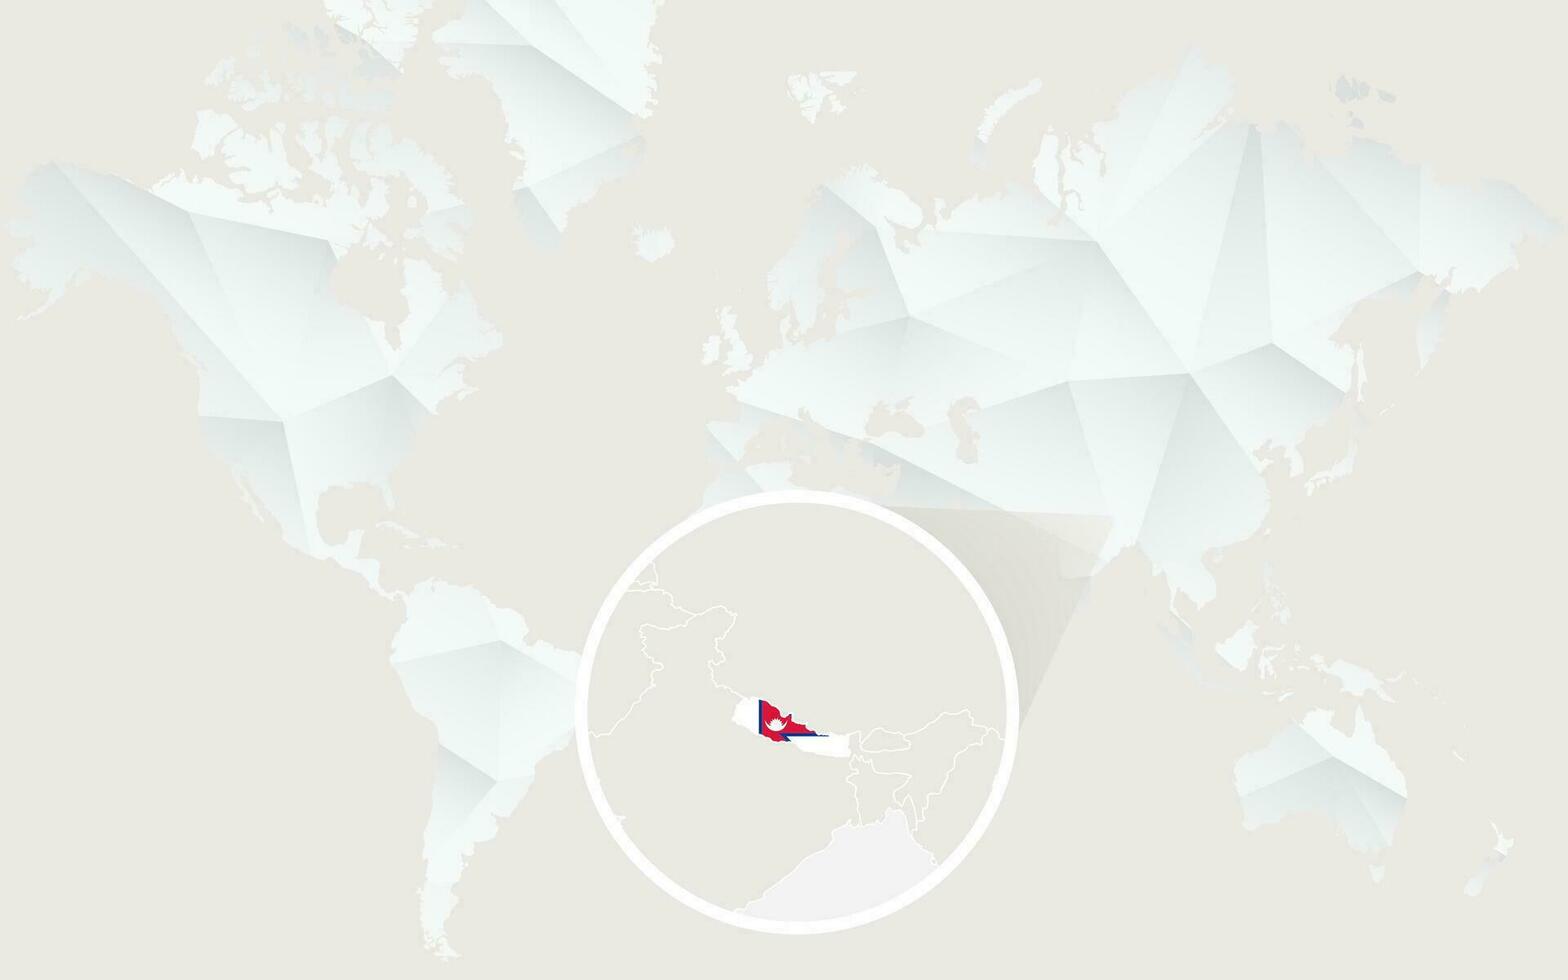 Nepal mapa com bandeira dentro contorno em branco poligonal mundo mapa. vetor